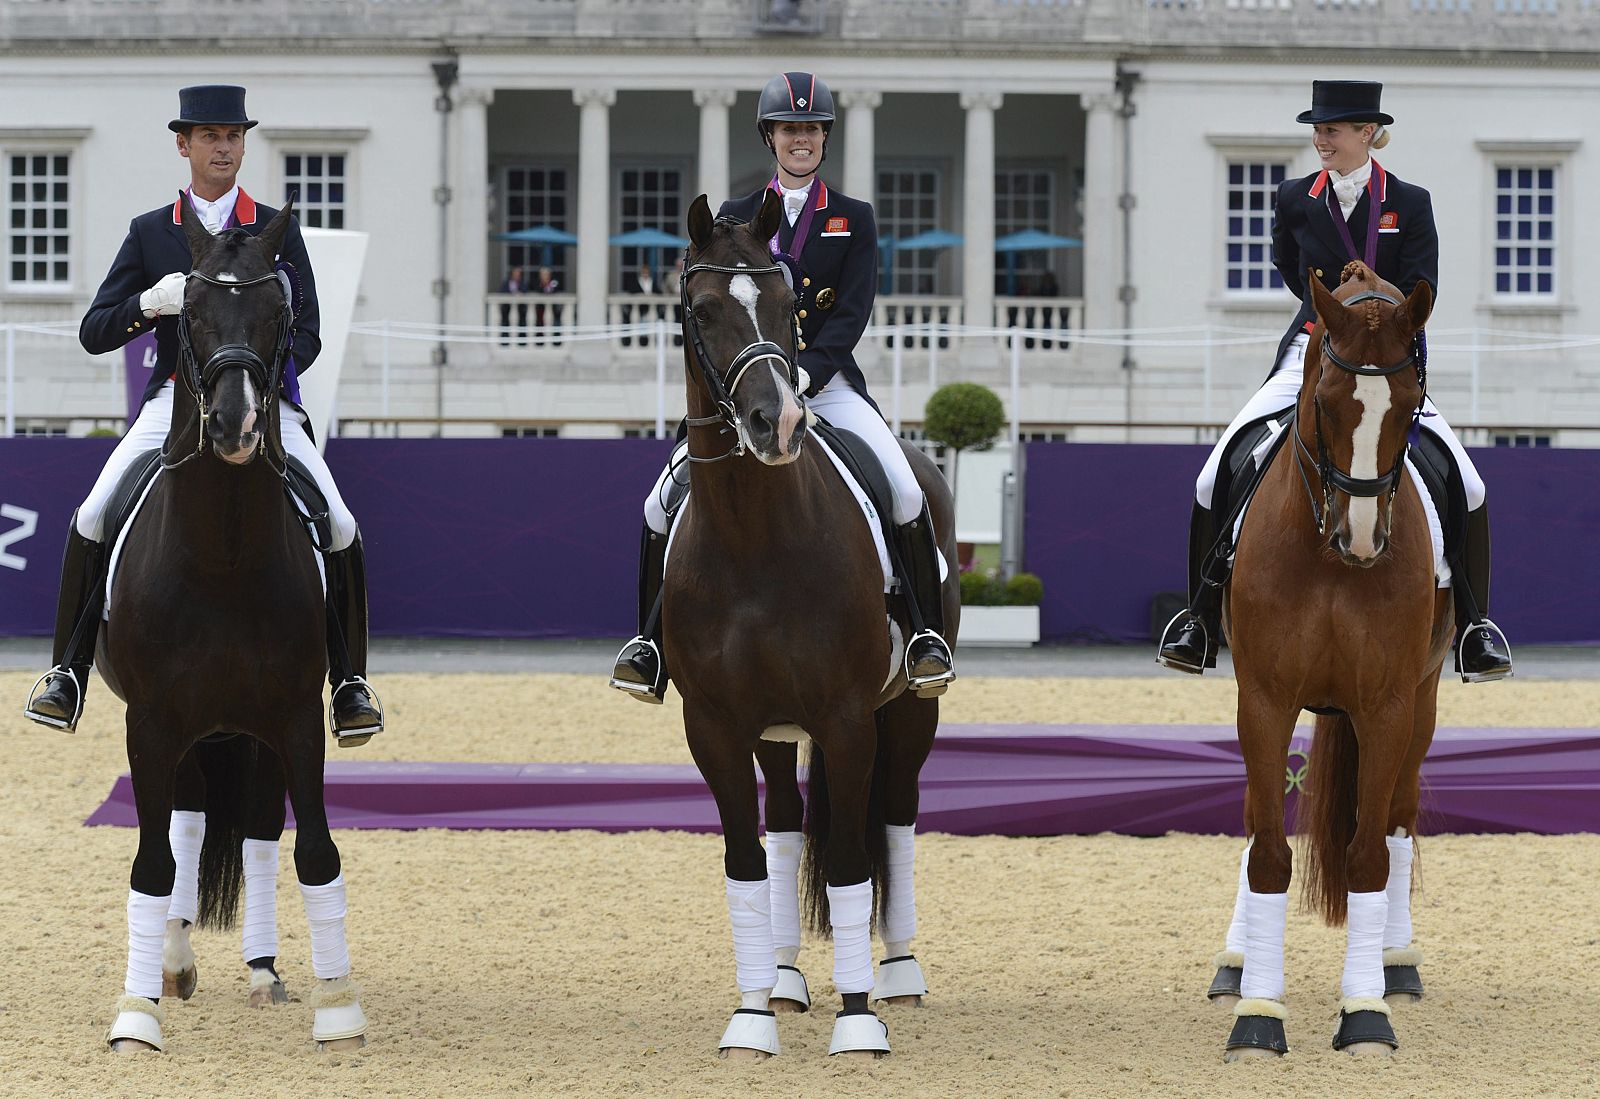 El equipo británico de equitación (Carl Hester, Laura Bechtolsheimer y  Charlotte Dujardin) celebra la medalla de oro conseguida en la final del Gran Premio de Doma Clásica de los Juegos Olímpicos.